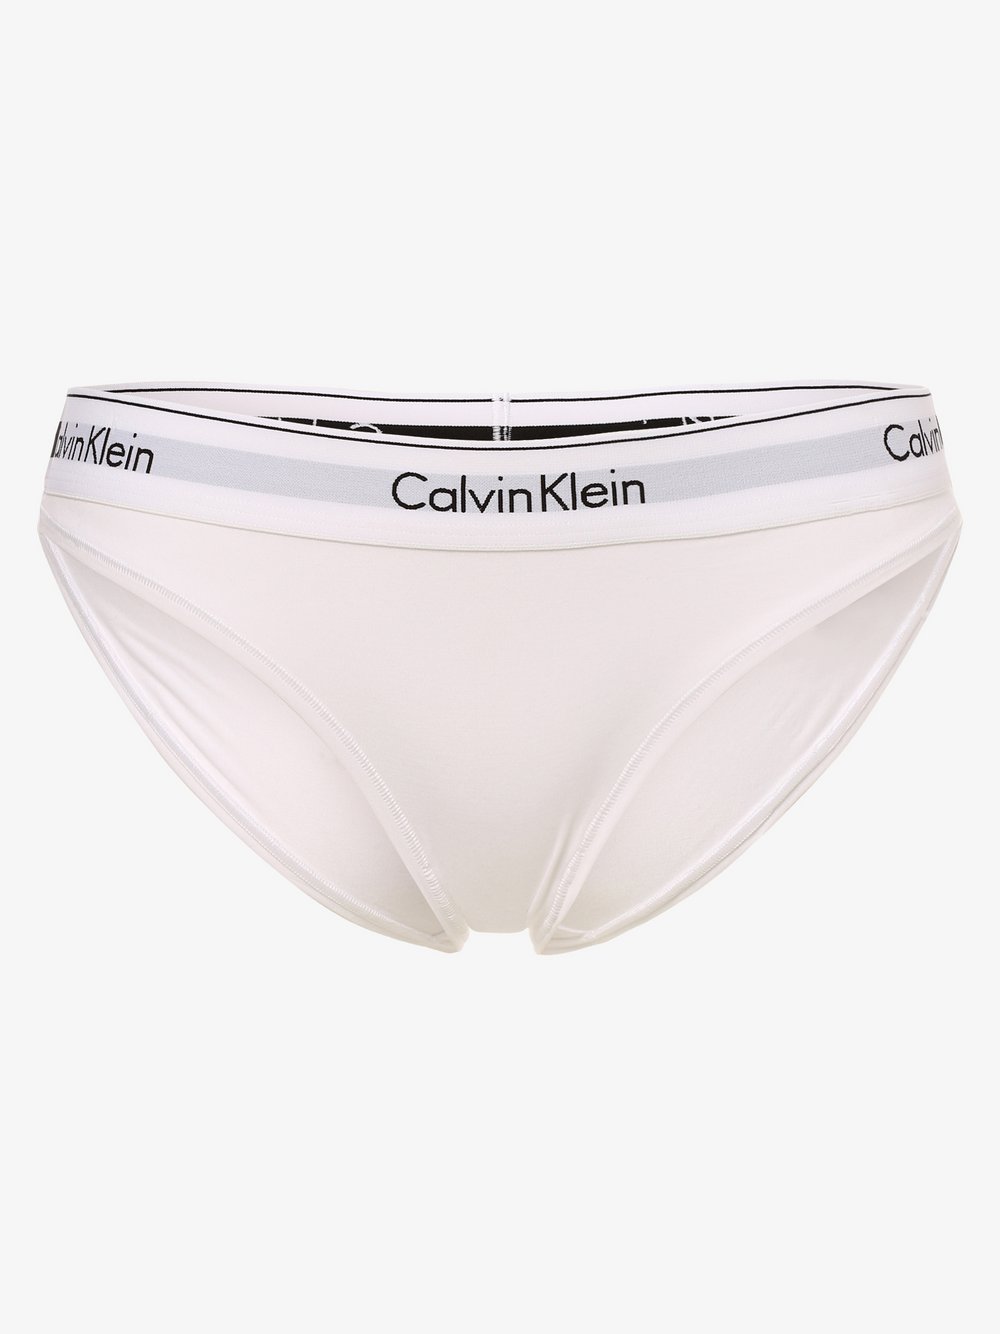 Calvin Klein - Slipy damskie, biały